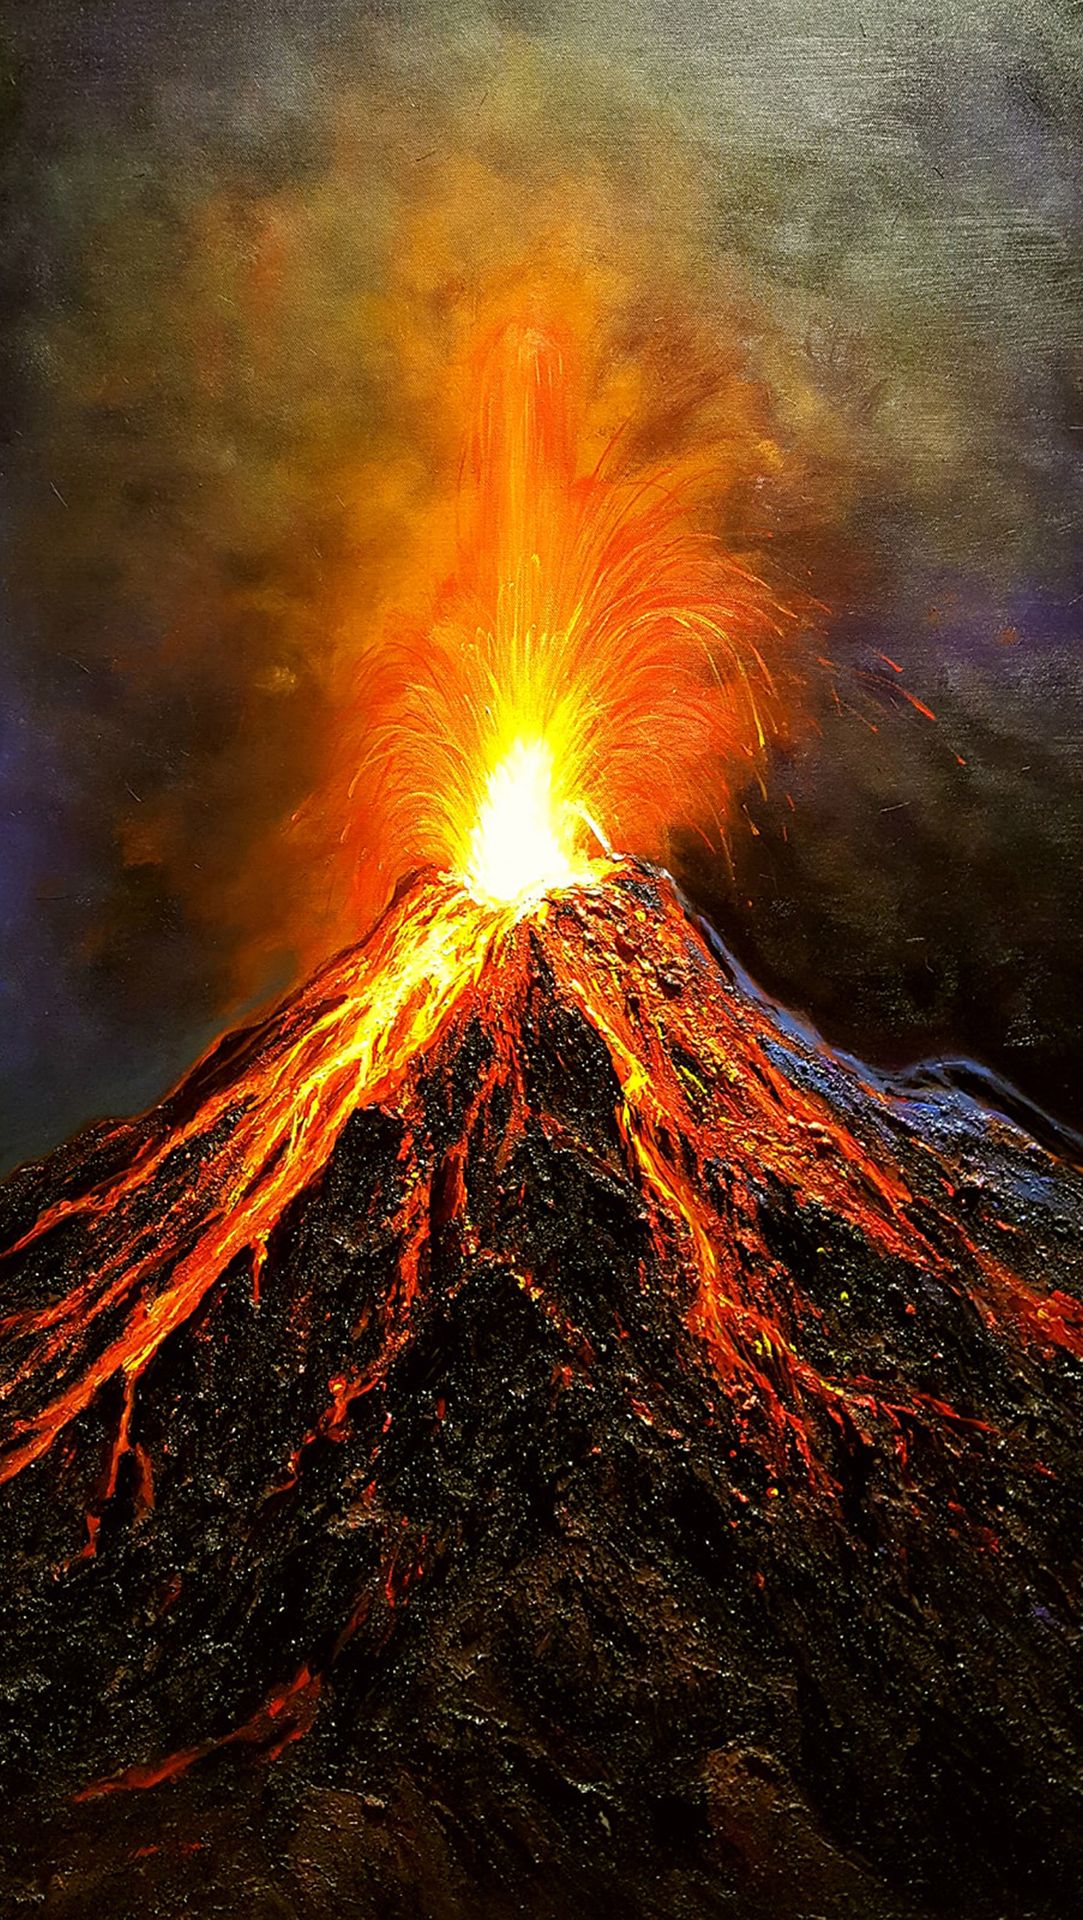 Núi lửa phun trào là một biểu tượng của sức mạnh của thiên nhiên và là một trong những hiện tượng tự nhiên kỳ lạ nhất trên hành tinh. Hãy cùng theo dõi những hình ảnh đẹp đến mê hồn về những cơn phun trào của các núi lửa trên thế giới.